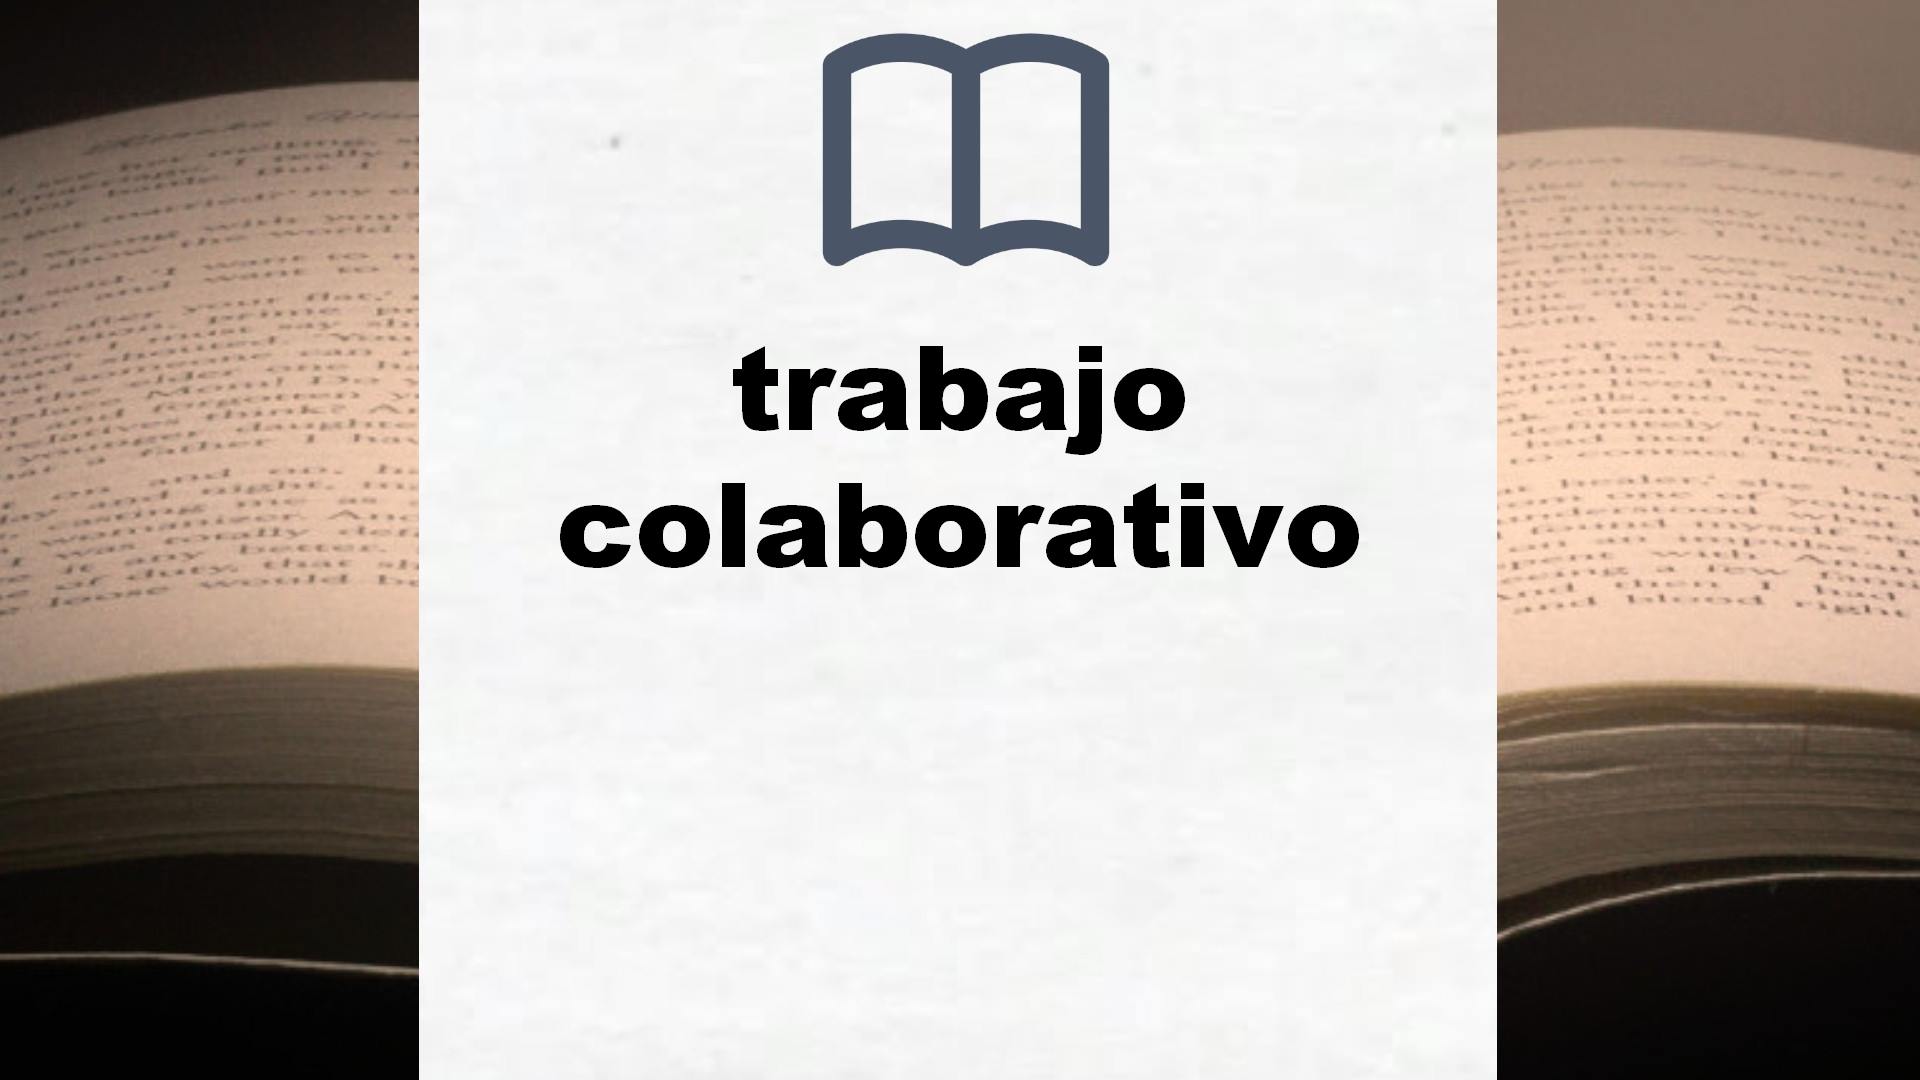 Libros sobre trabajo colaborativo